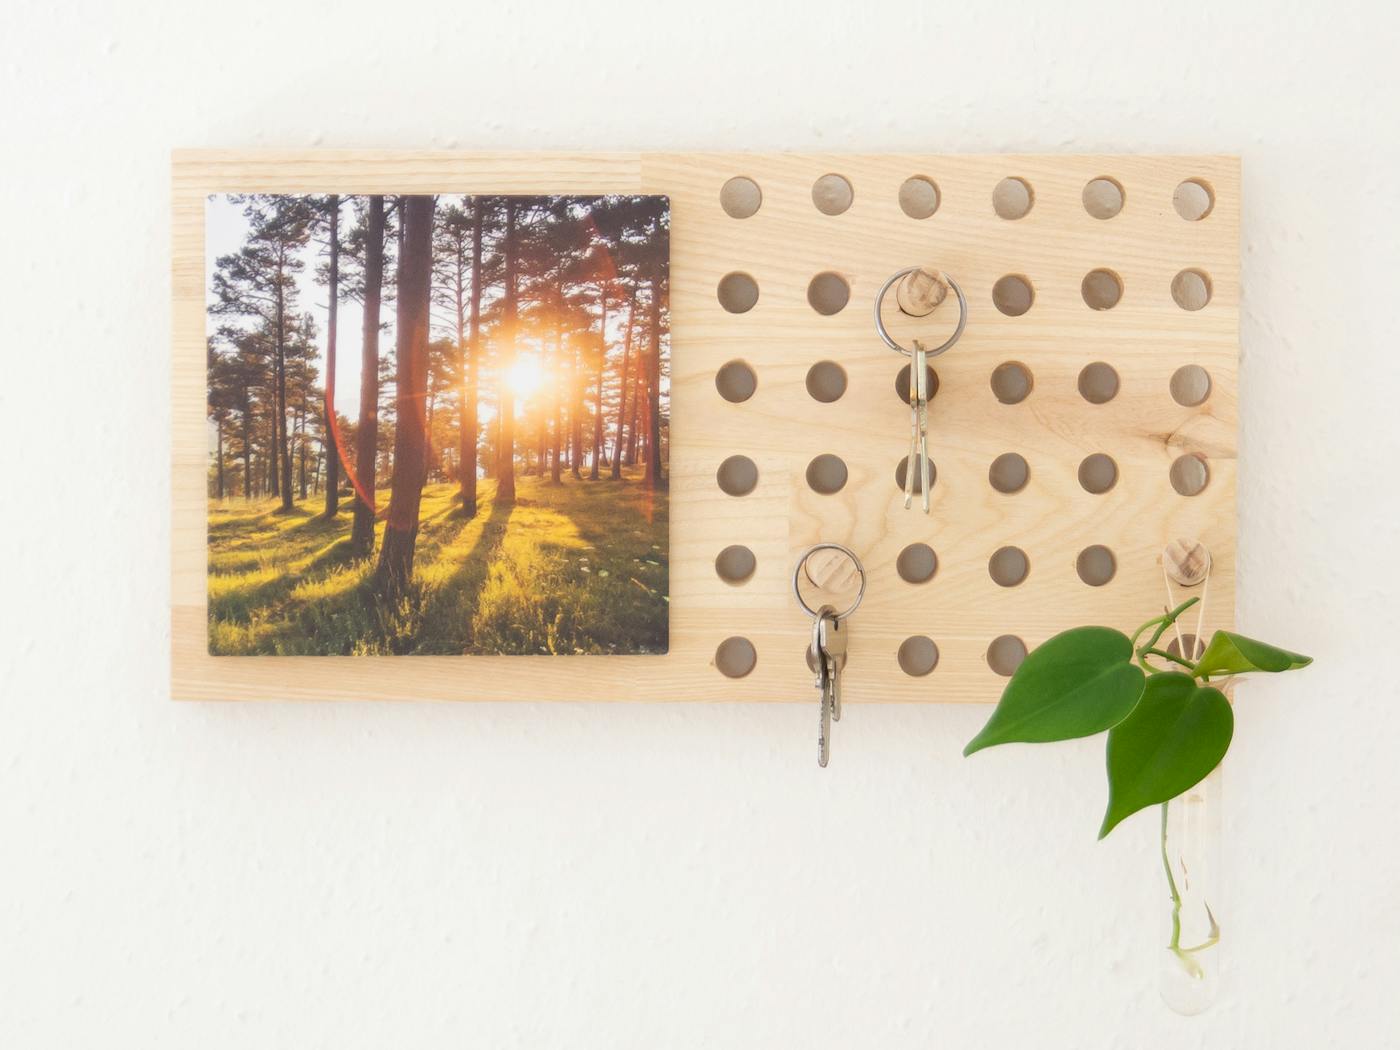 Idee 2: DIY-Schl�sselboard als Einweihungsgeschenk